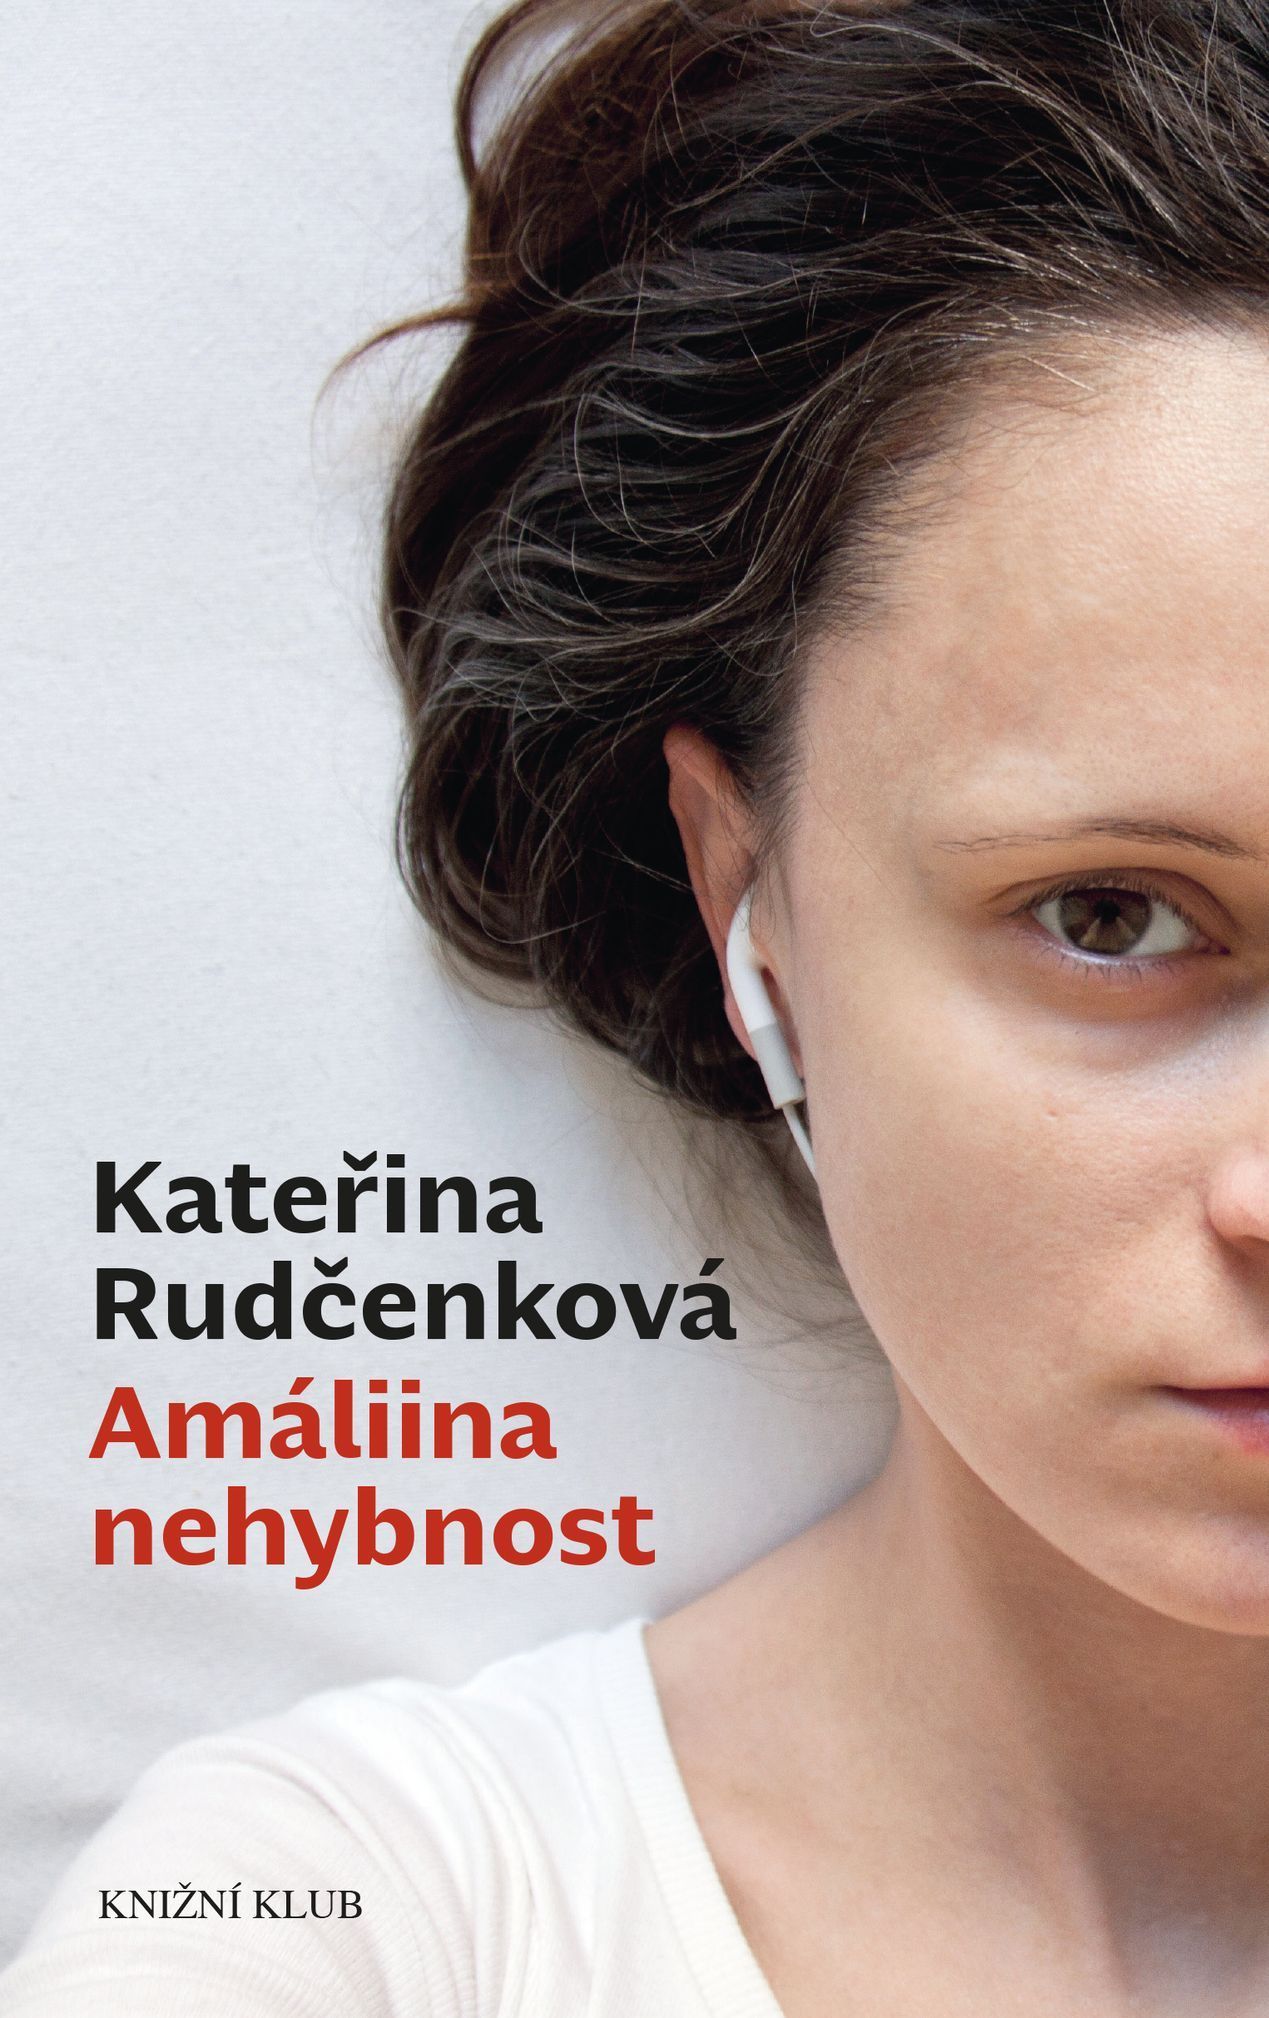 Kateřina Rudčenková: Amáliina nehybnost